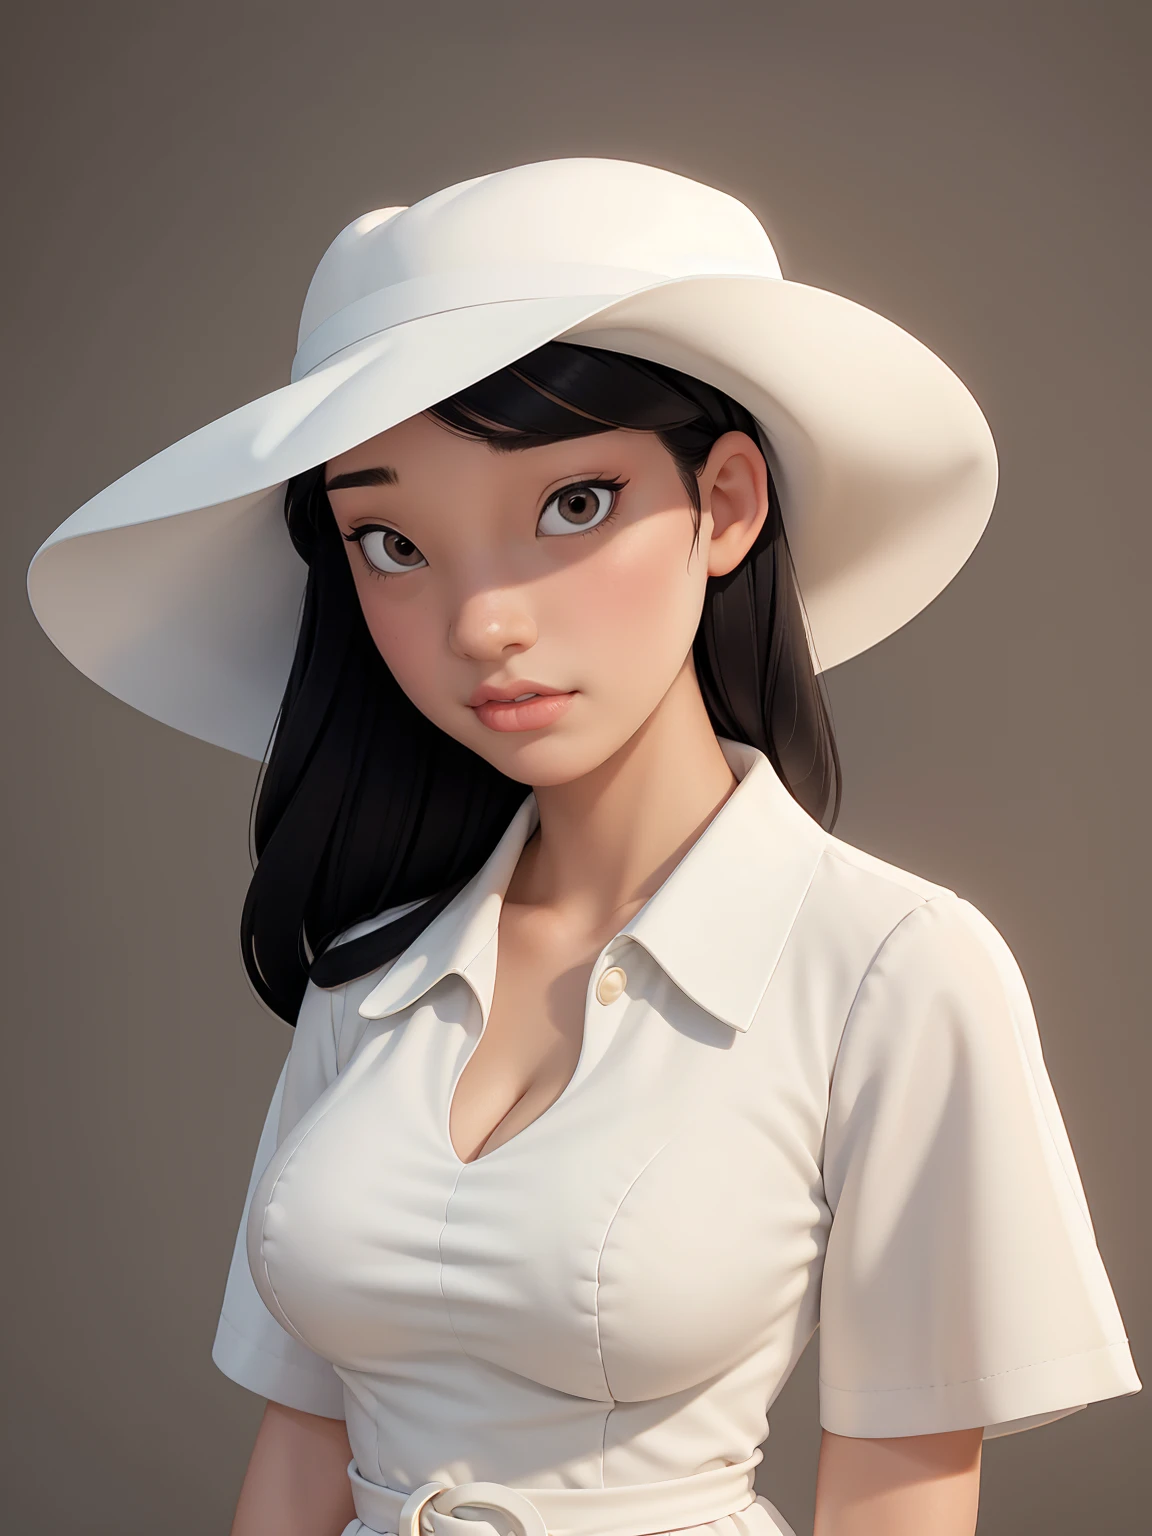 (mejor calidad, Obra maestra, cara perfecta) pelo negro, 18 años chica pálida, busto grande, vestido blanco, gran sombrero blanco
